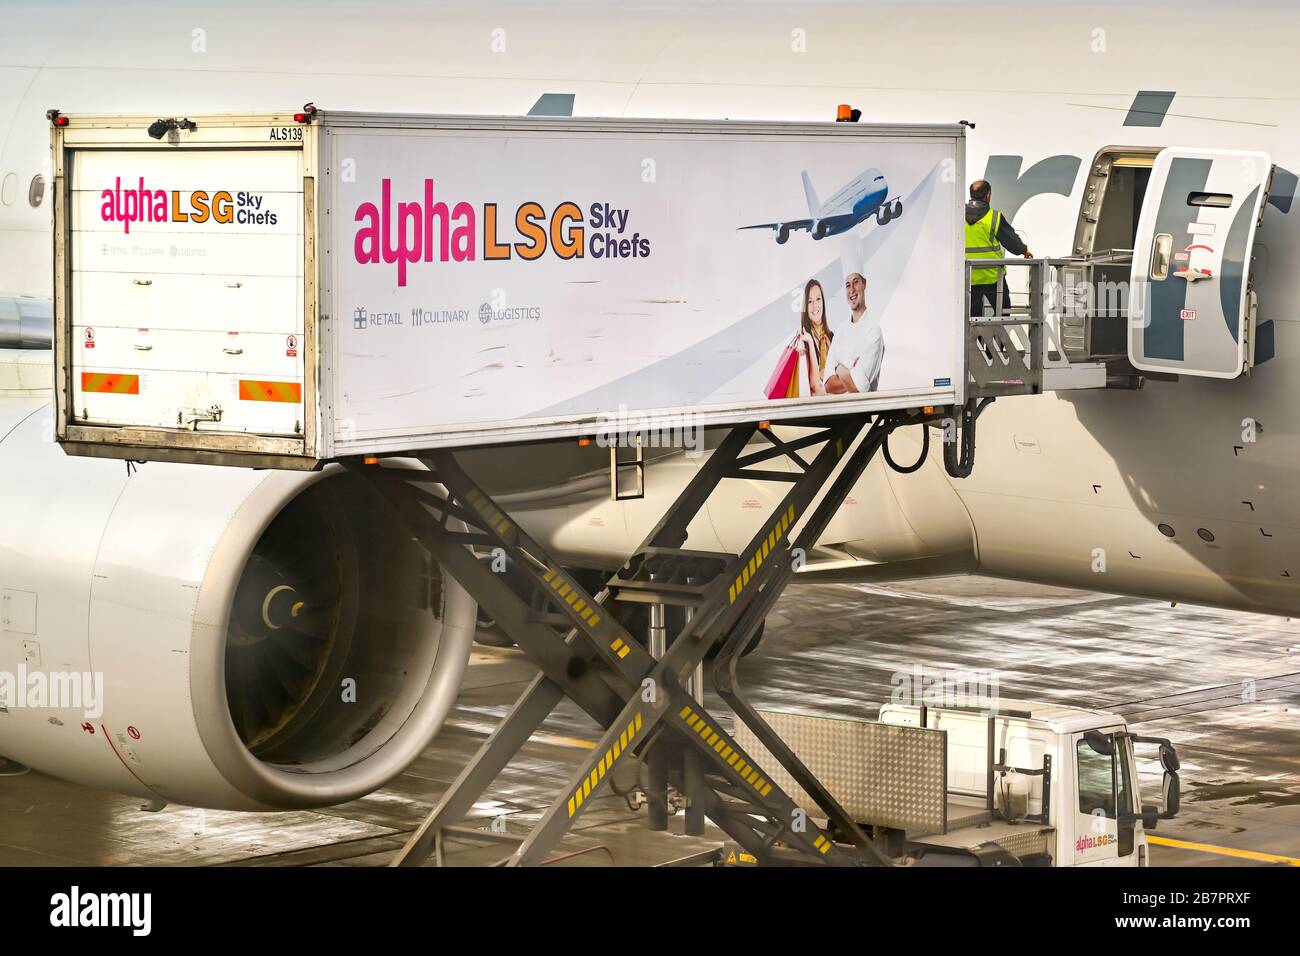 LONDON, ENGLAND - NOVEMBER 2018: Scherenhubwagen des Fluggastunternehmens Alpha HSG Sky Chefs, der Essen und Getränke in ein Flugzeug lädt Stockfoto